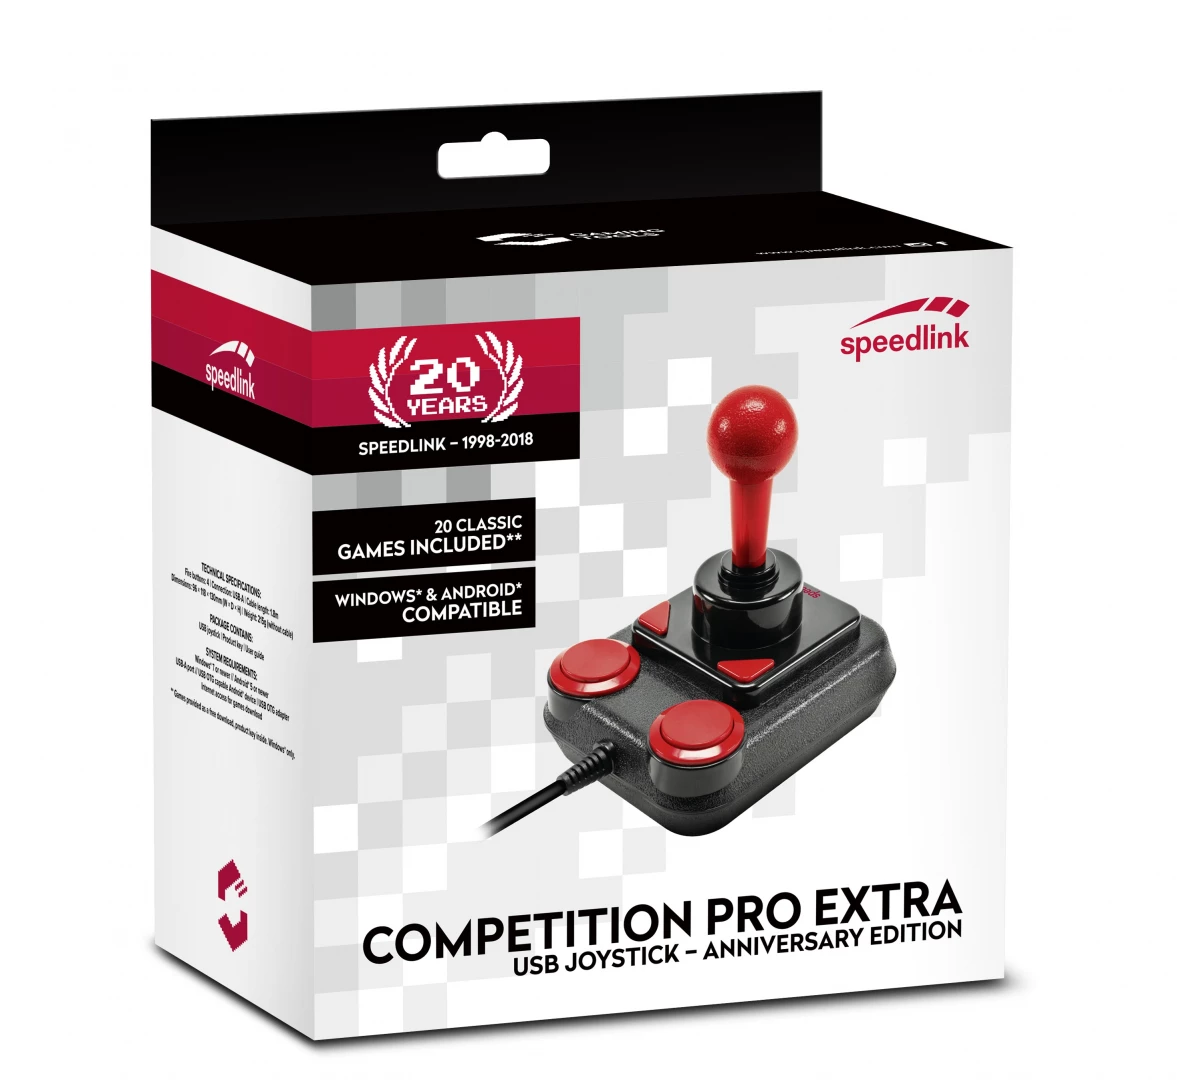 Speedlink Competition Pro Extra USB Joystick - Anniversary - Zwart/Rood voor de PC Gaming kopen op nedgame.nl